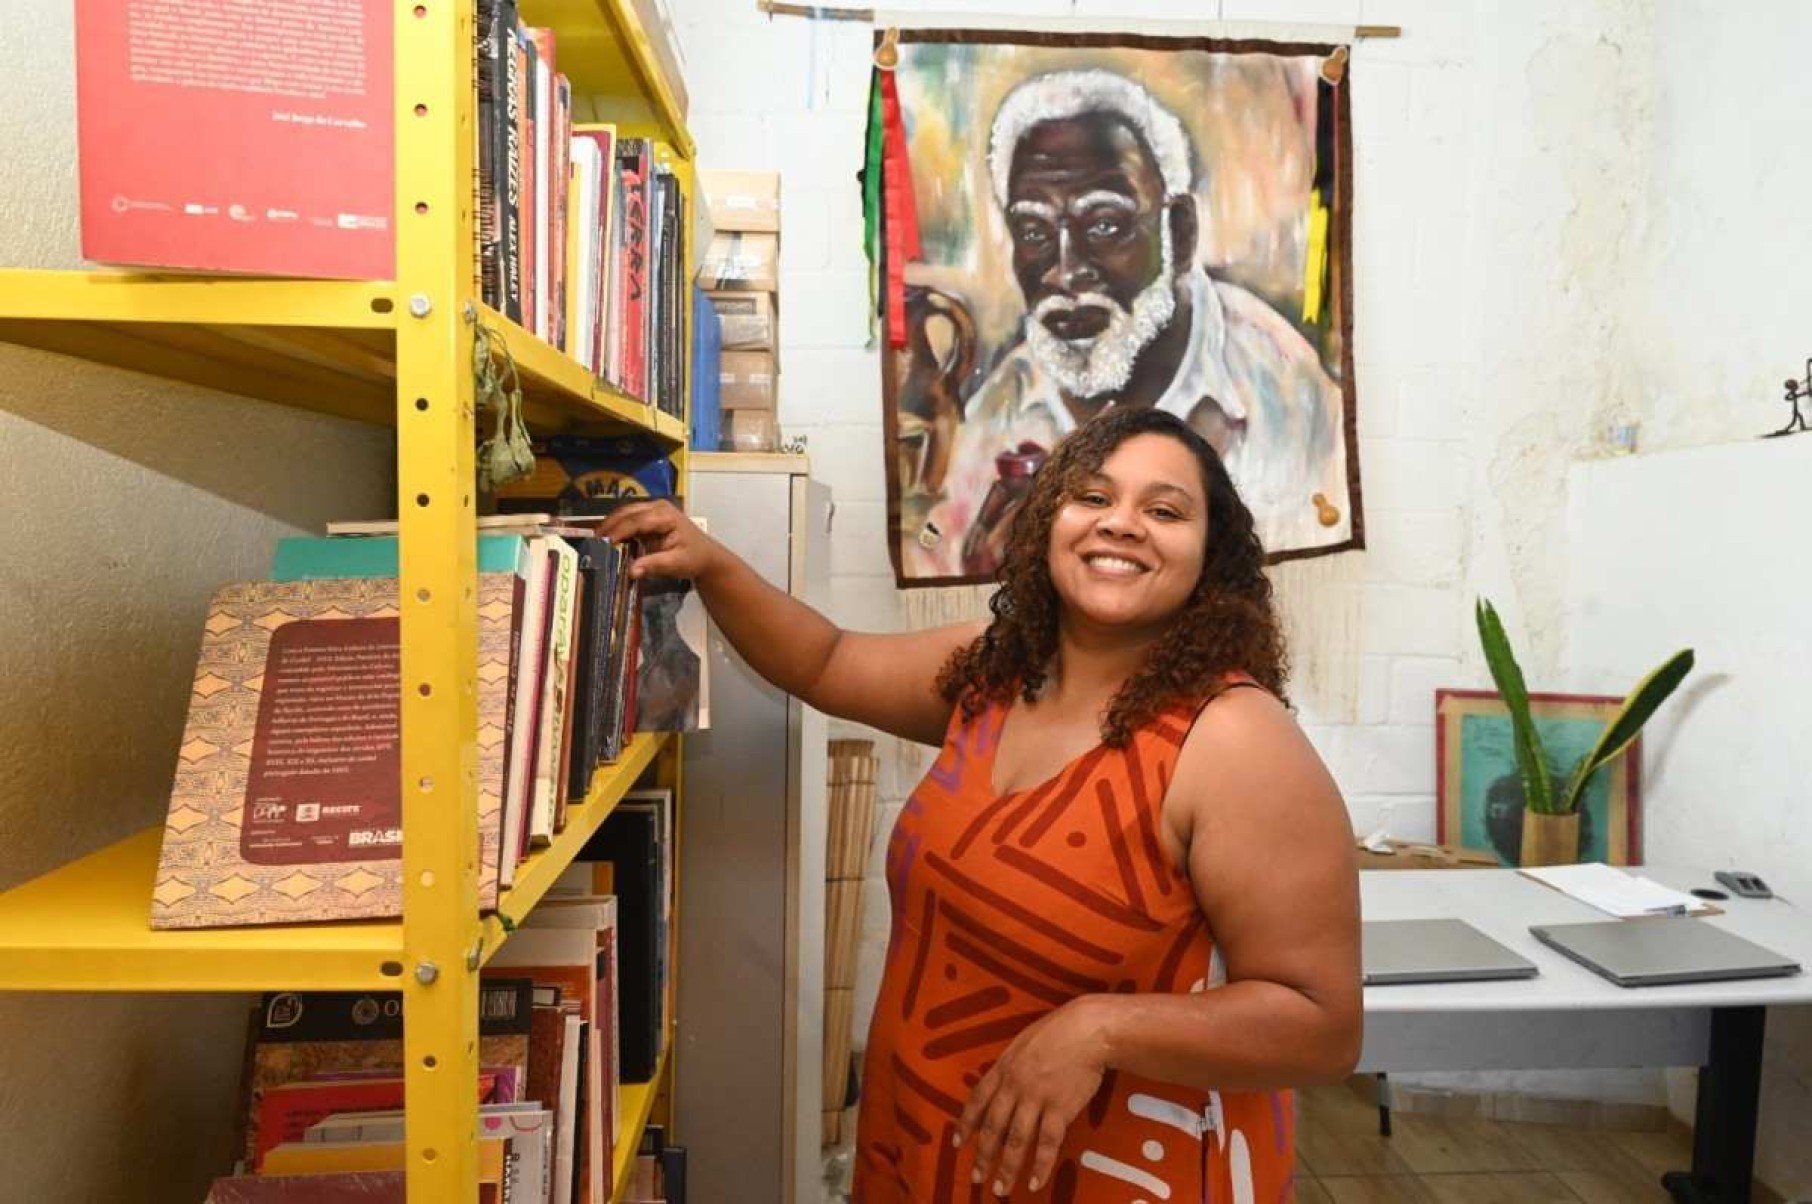 BH: biblioteca exclusiva para obras de autores negros é criada em quilombo